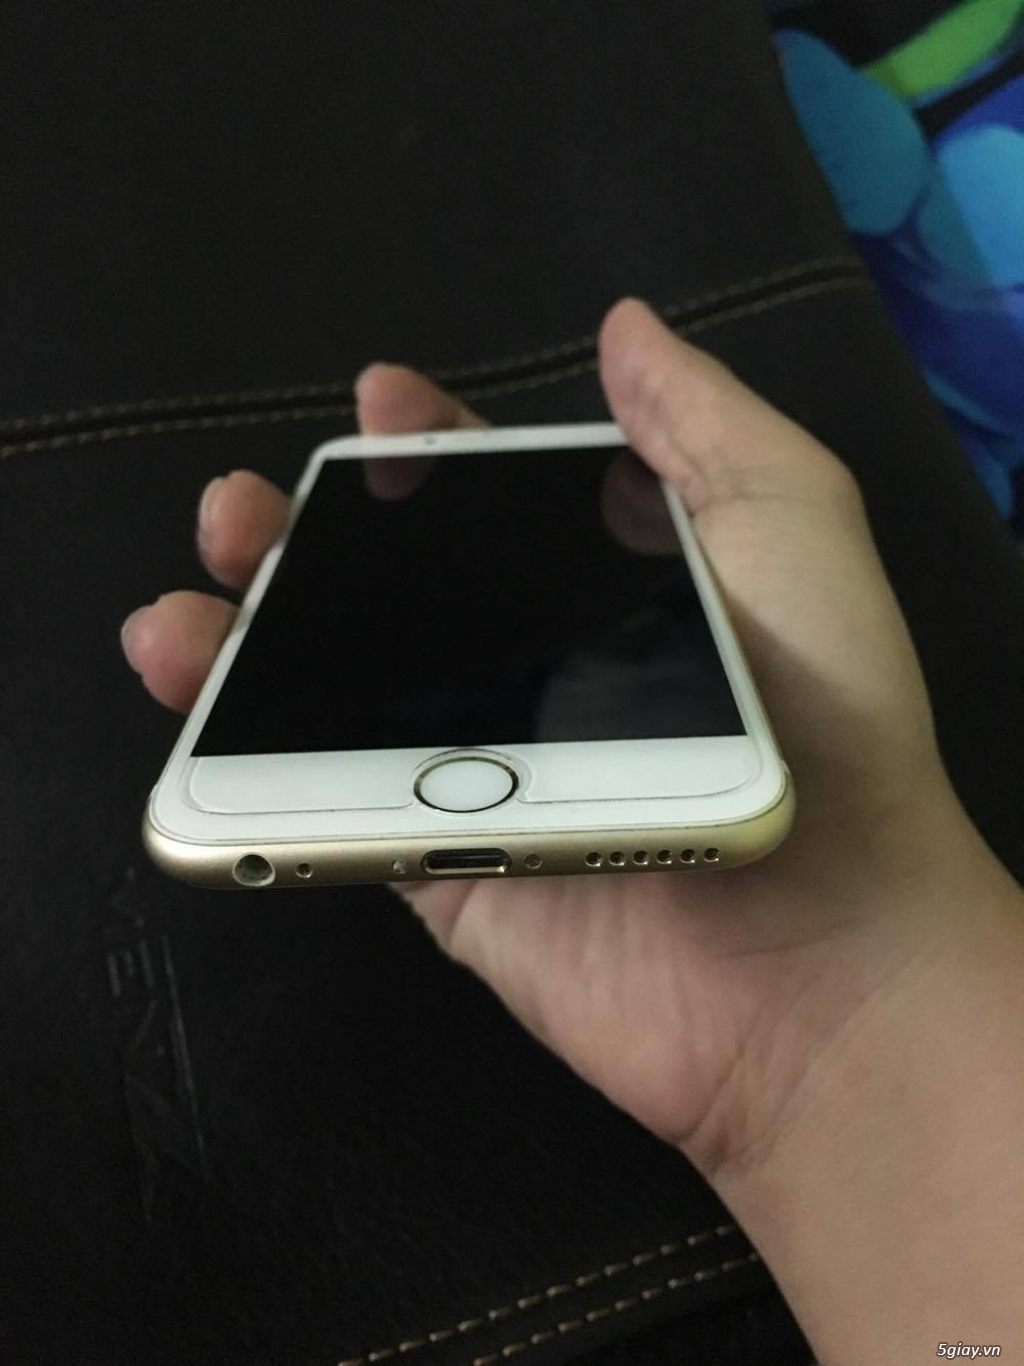 iPhone 6 Gold 99,98% (16GB - World - UK) cho chủ nhân xứng đáng - 4